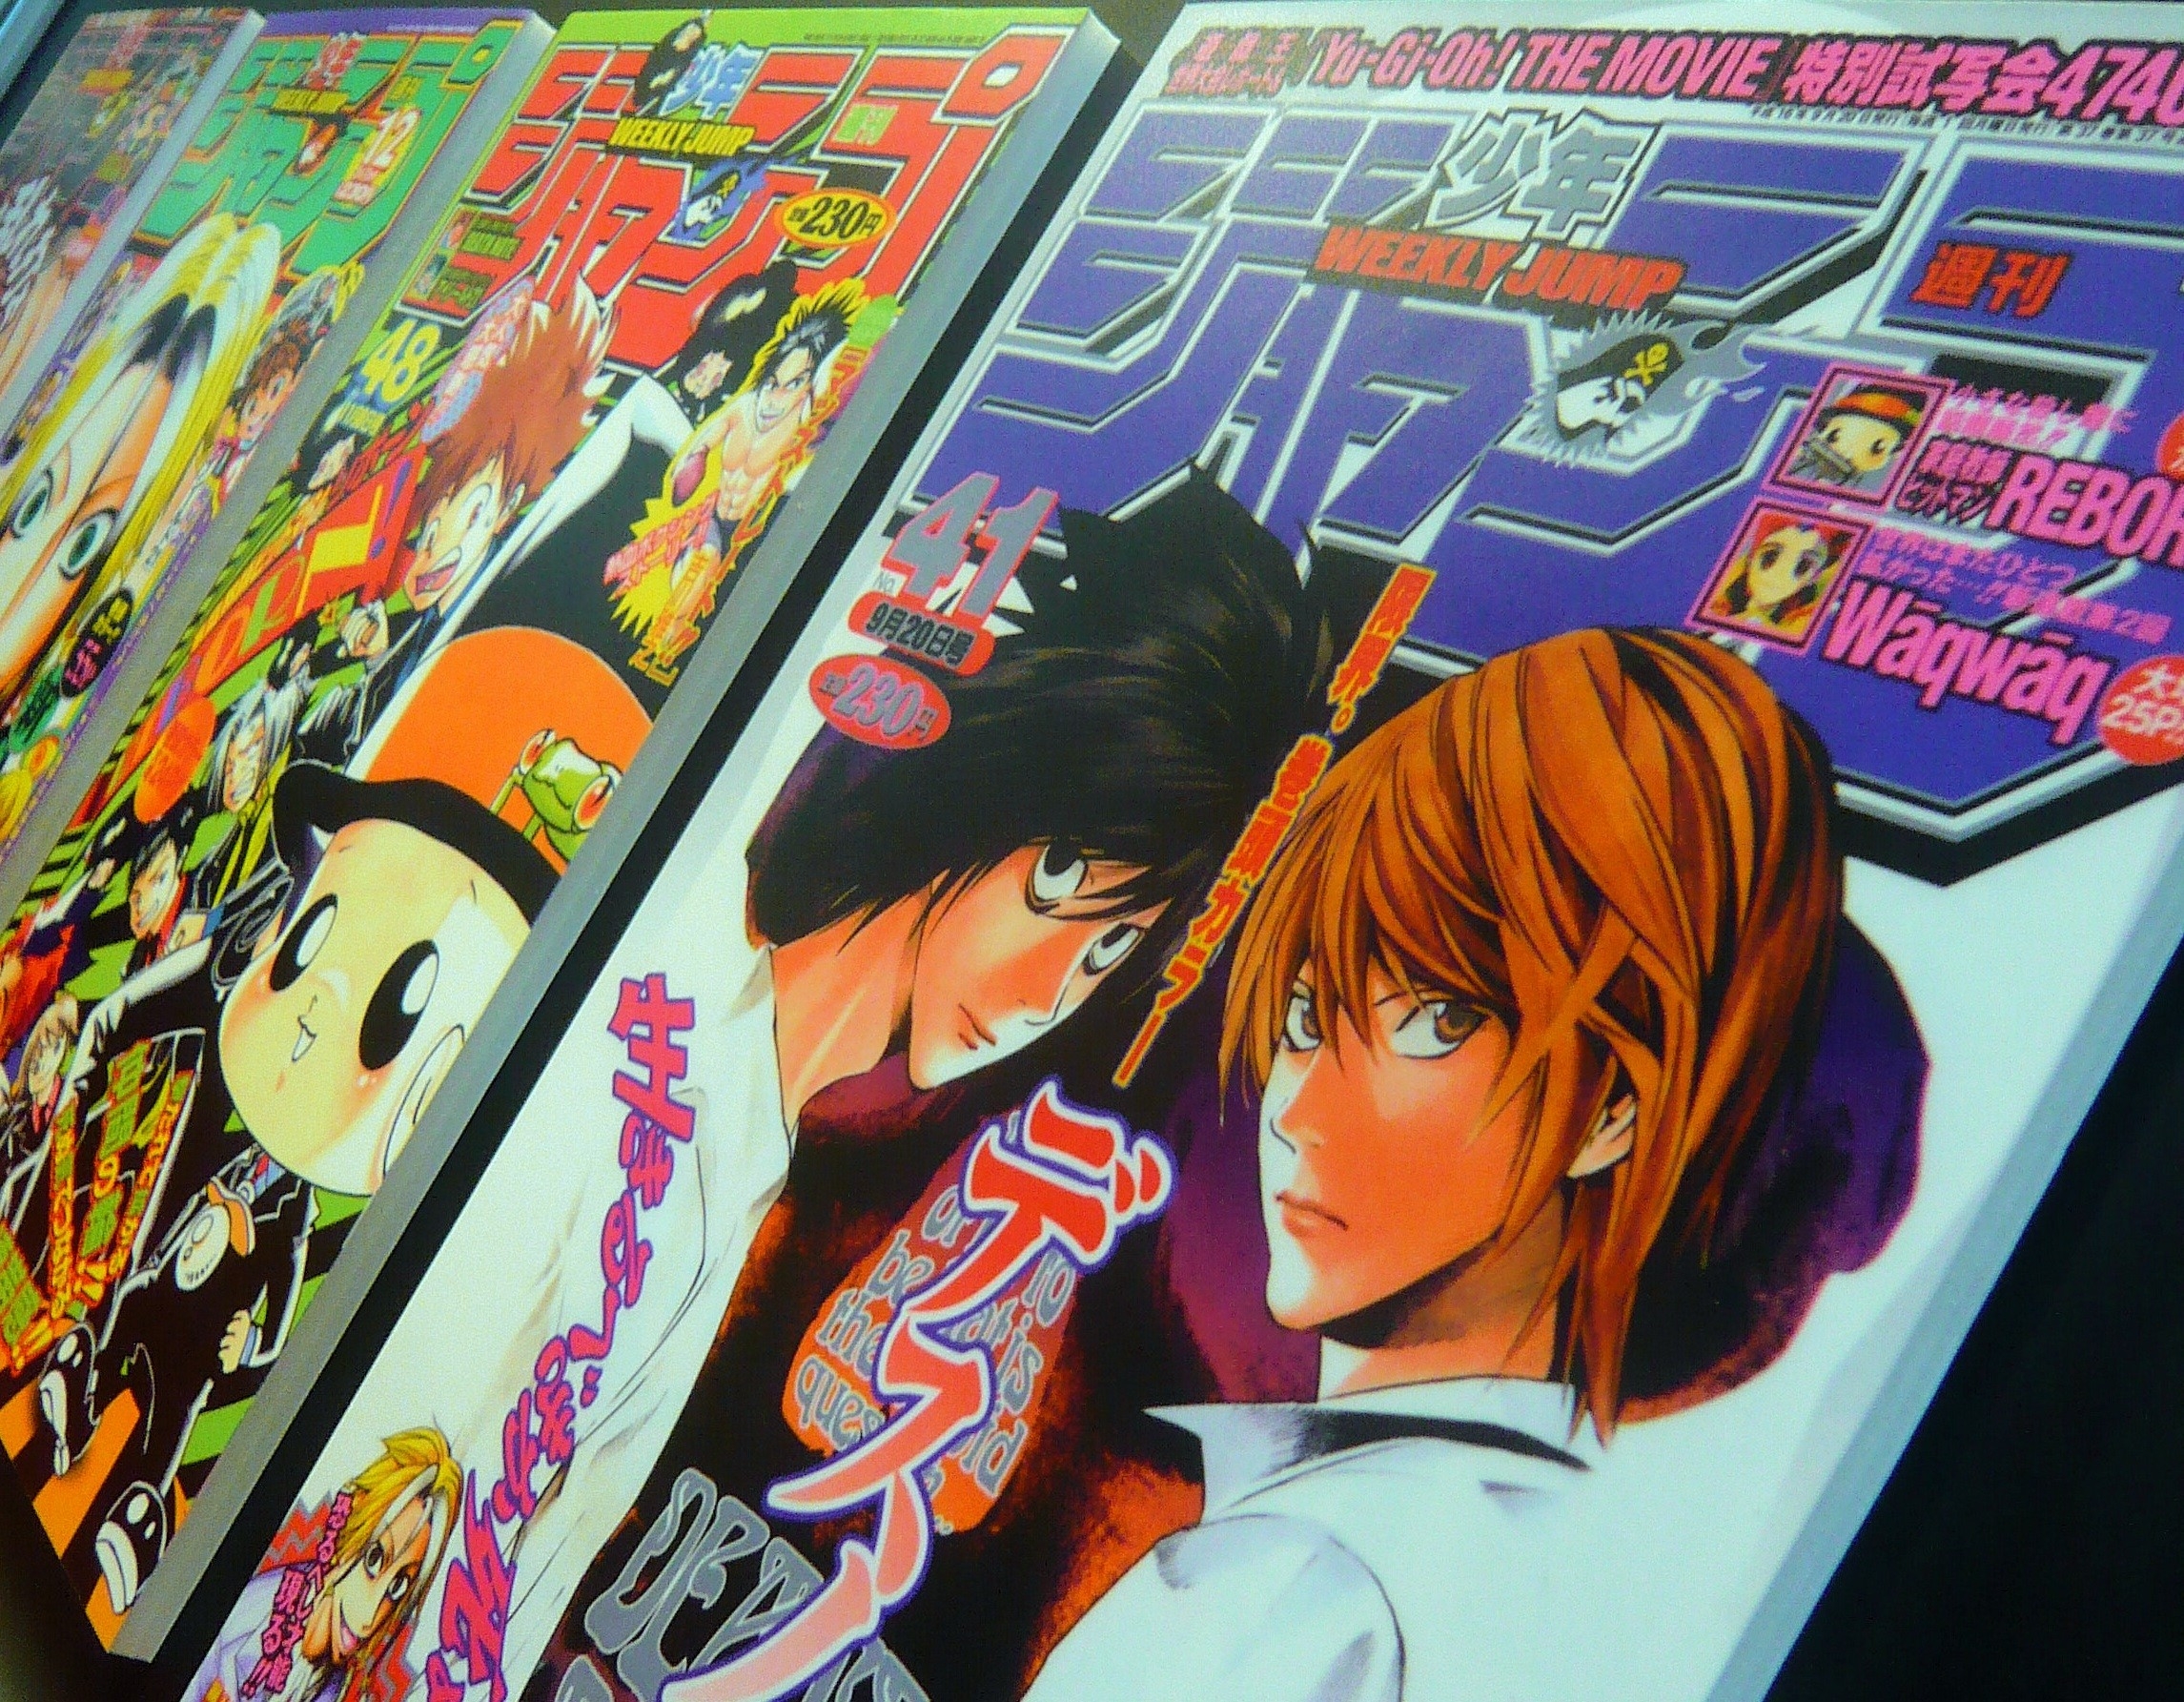 This Week's Shonen Jump Cover Features Himura Kenshin from “Rurouni Kenshin”!, Manga News